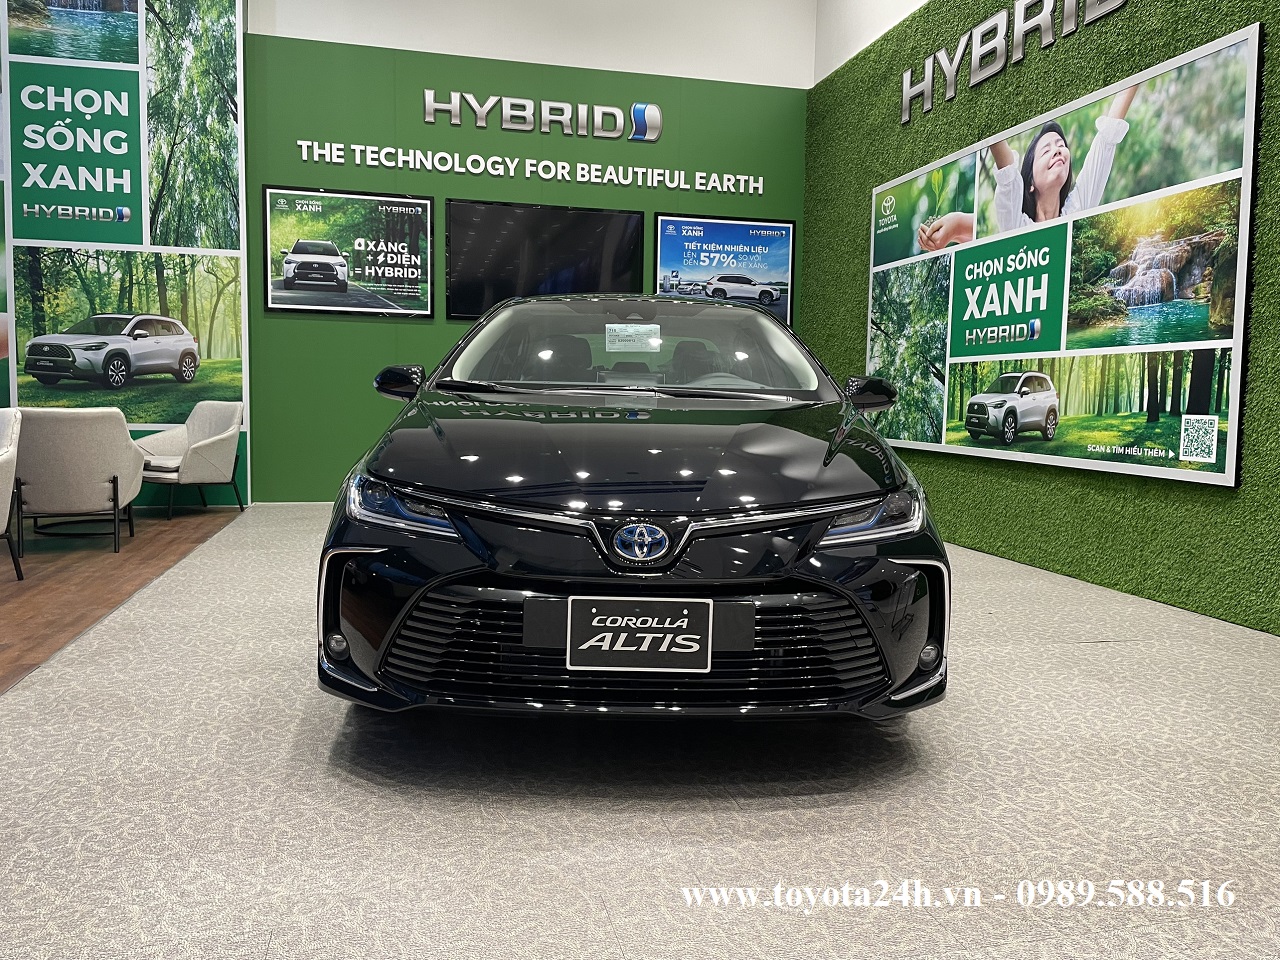 Toyota Corolla Altis 1.8 Hybrid 2022 Màu Đen Hình Ảnh Bảng Giá Xe Lăn Bánh Mới Nhất Hôm Nay